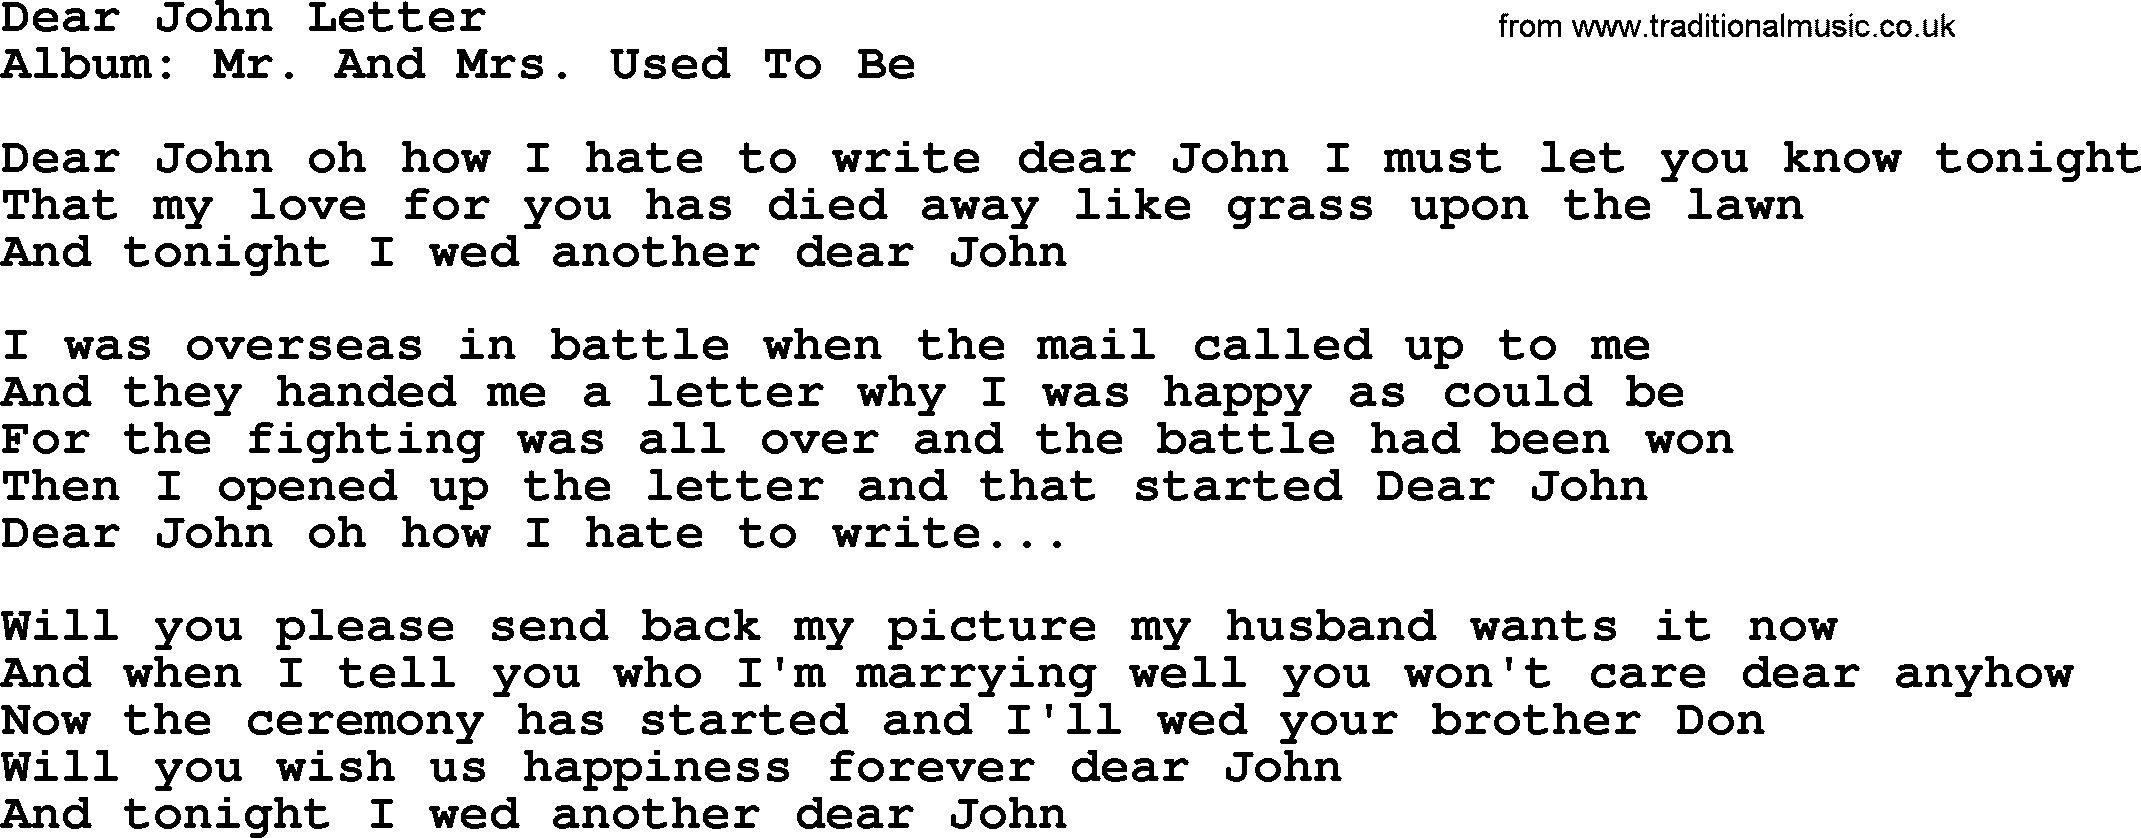 Loretta Lynn song: Dear John Letter lyrics